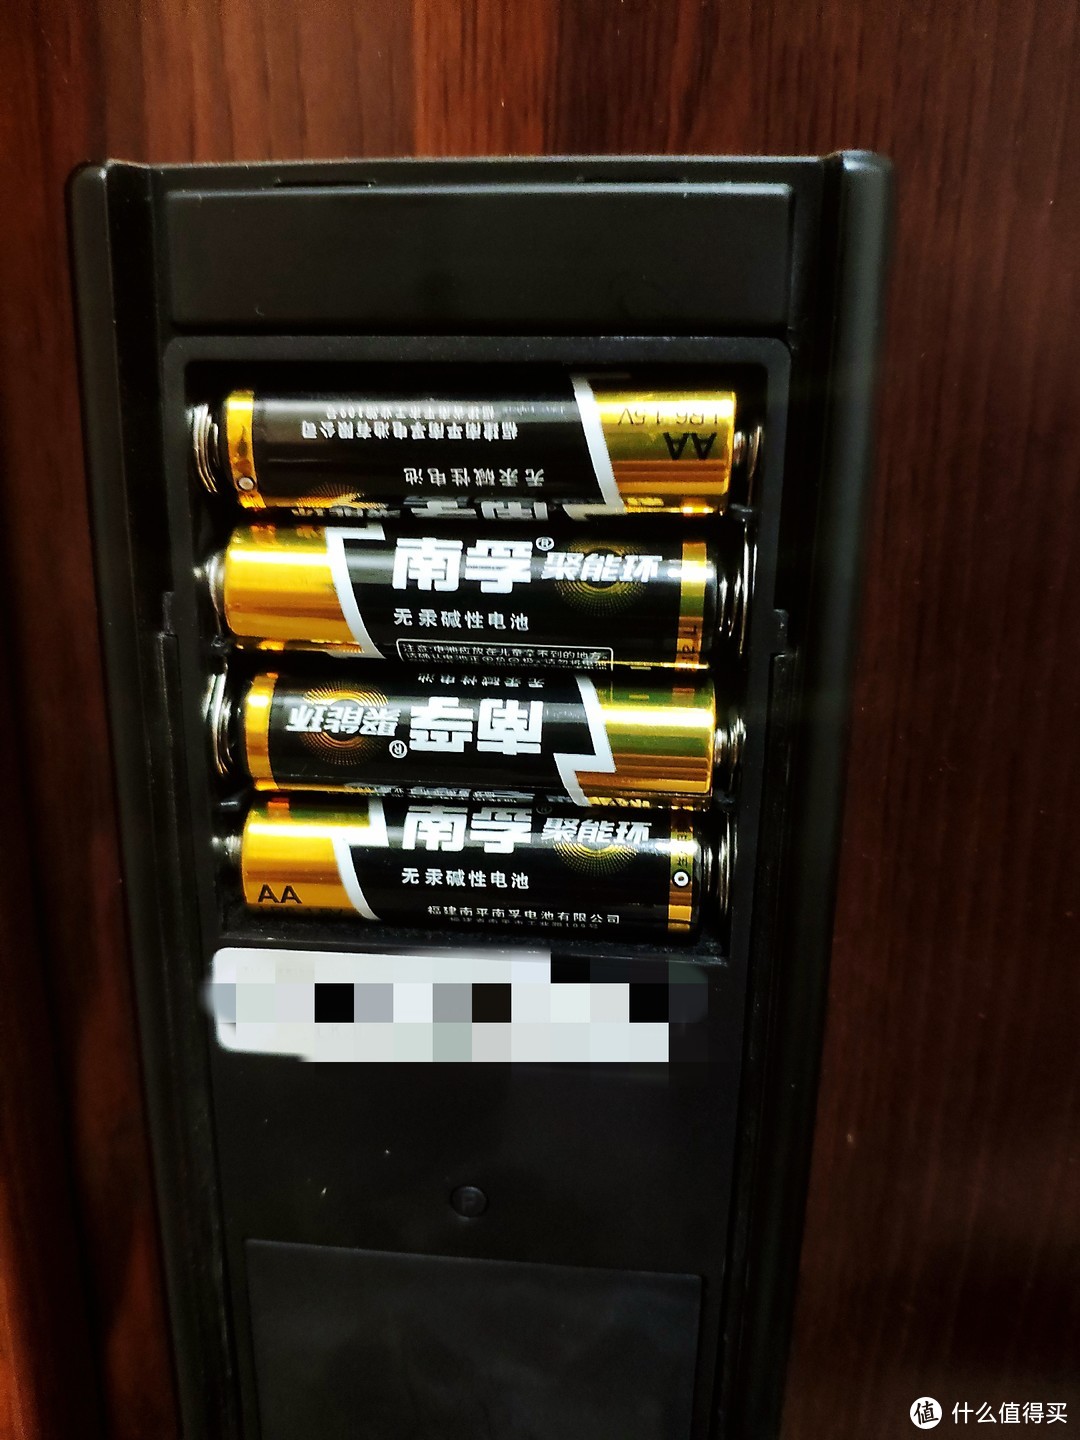 ▲5号电池在智能门锁上的使用